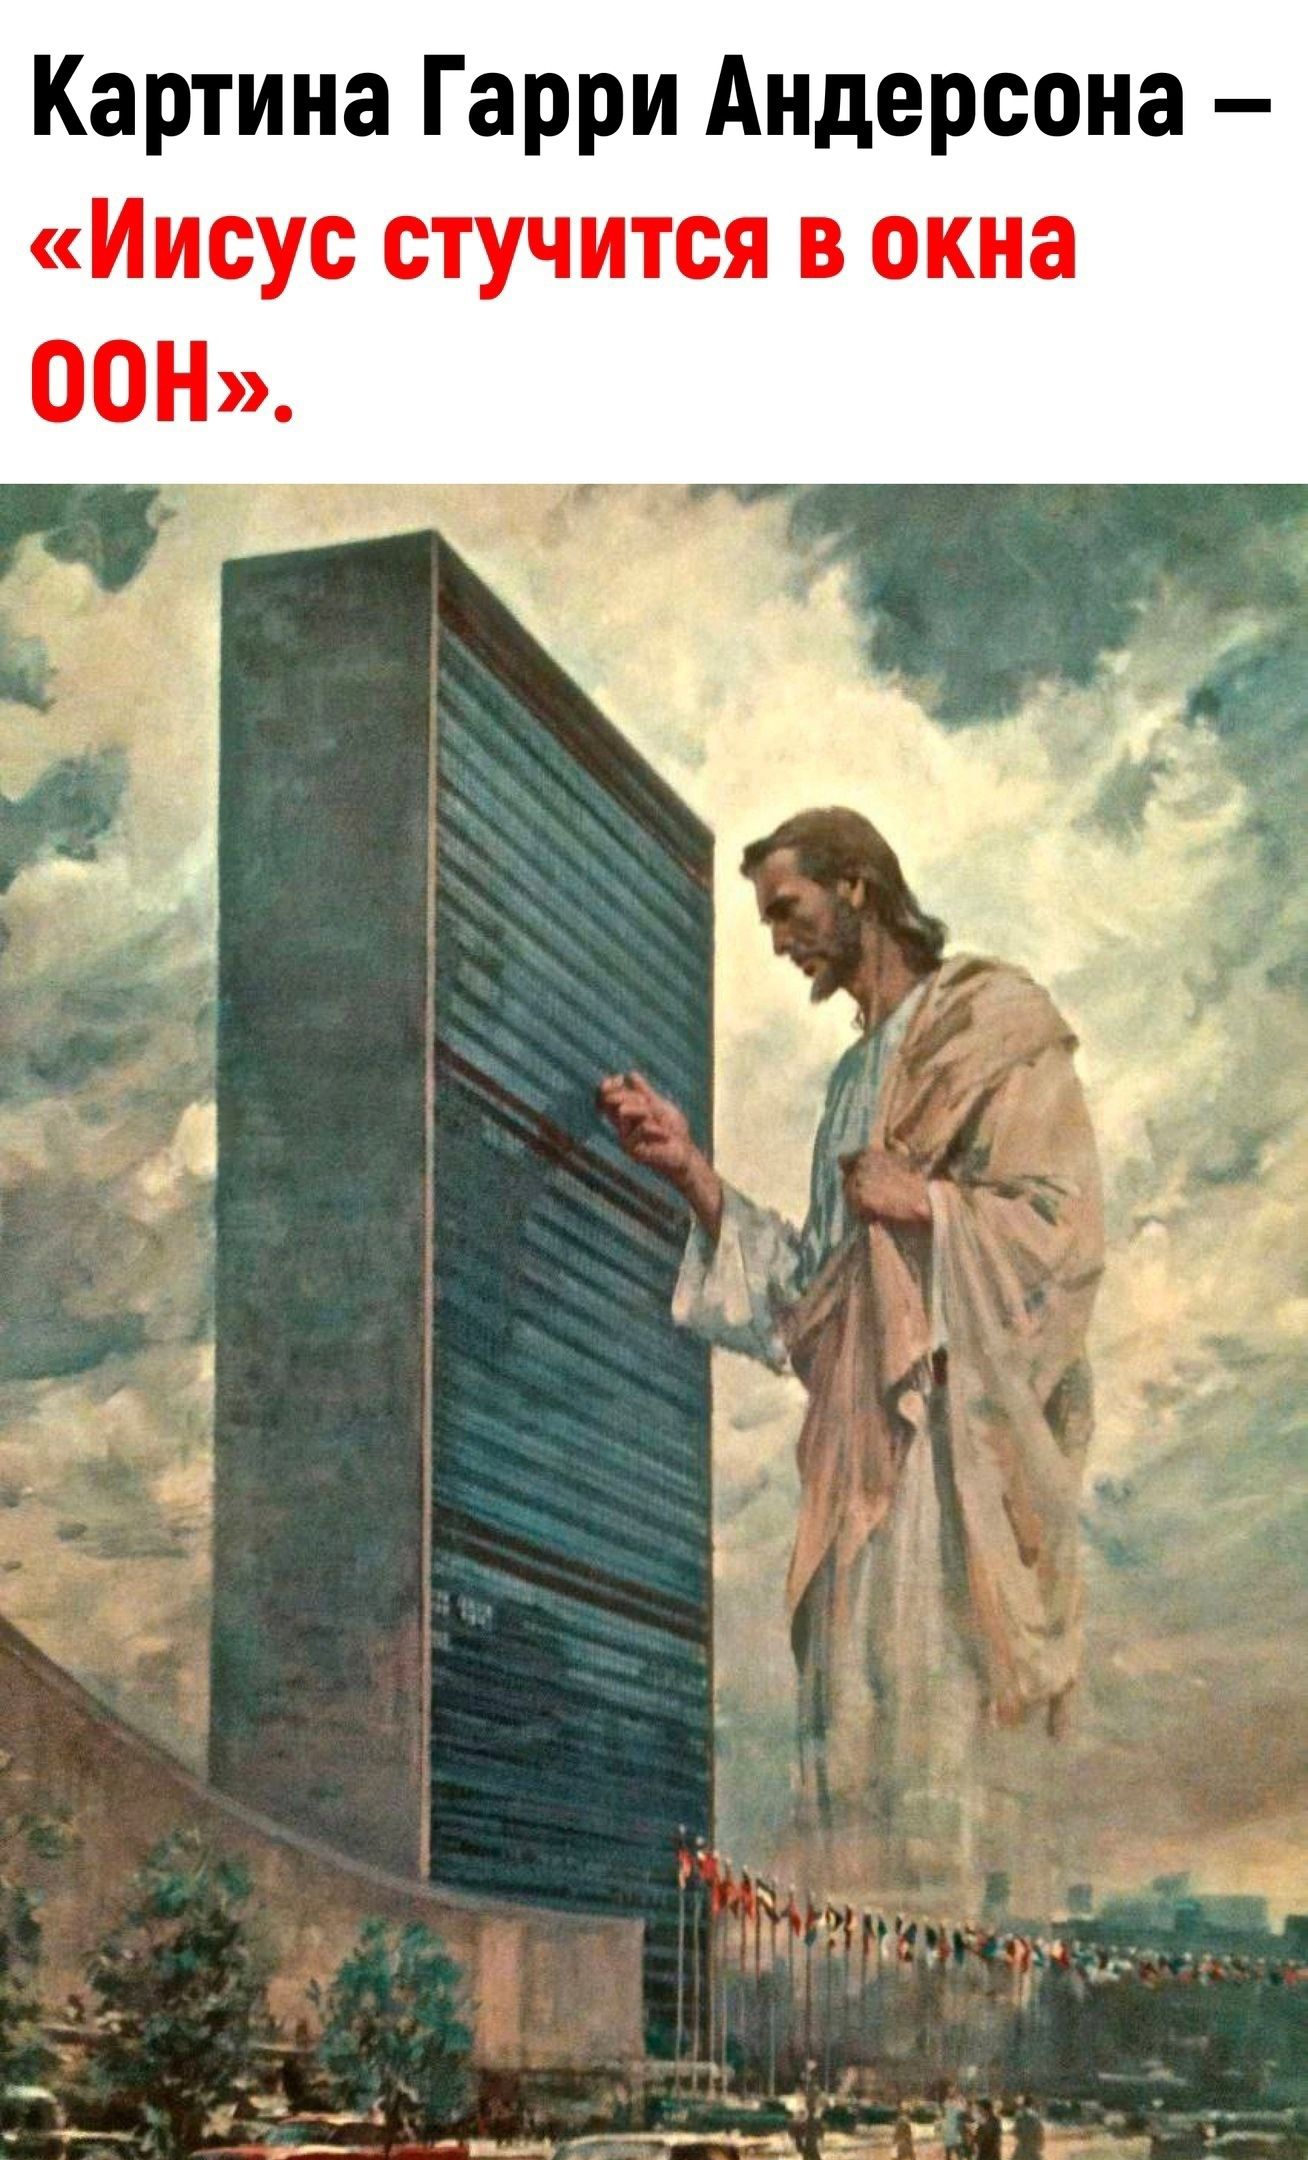 Картина Гарри Андерсона Иисус стучится в окна ООН